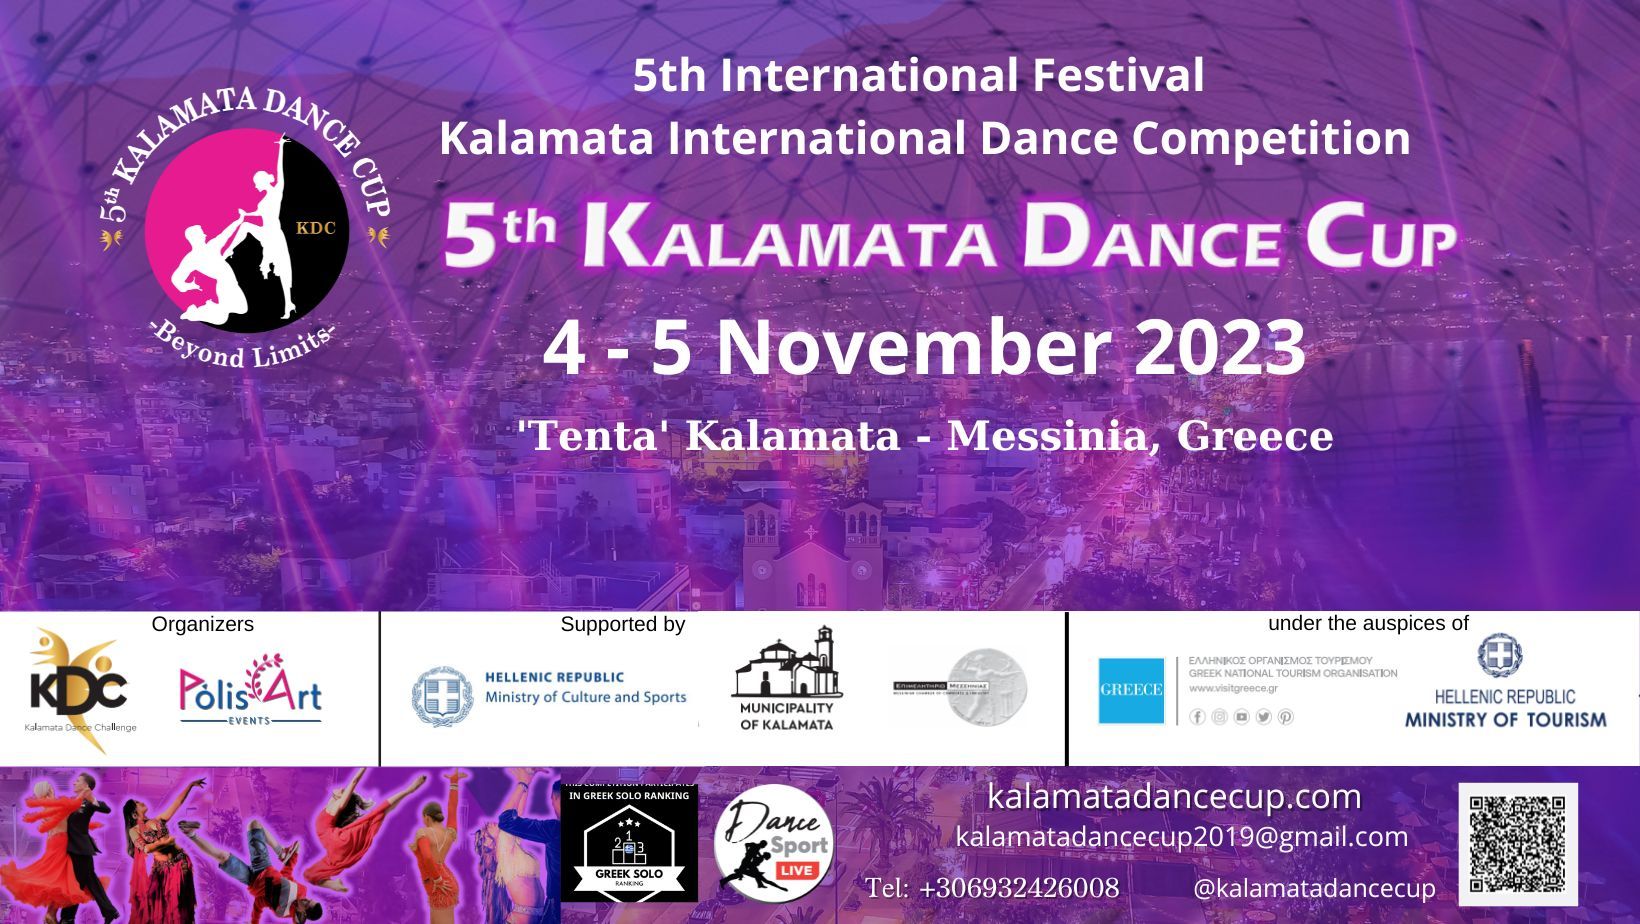 φωτογραφίαKalamata Dance Cup - Beyond Limits International Open Dance Competition & Training Campblurred